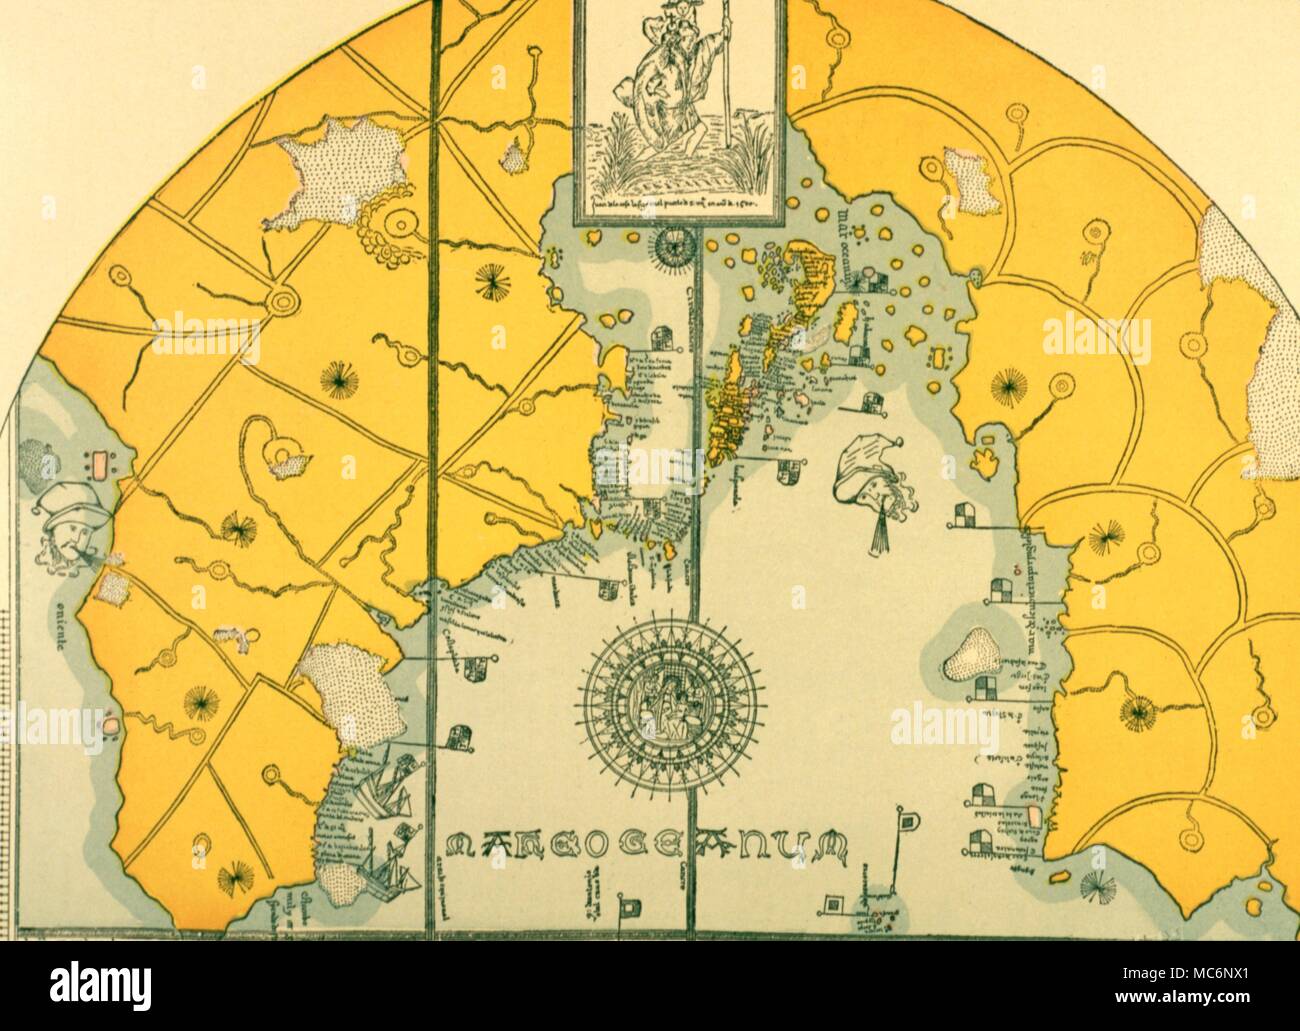 Stati Uniti metà occidentale della prima mappa delle nuove scoperte, disegnato su ox - nascondi in colori dal pilota, Juan de la cosa, 1500 Annuncio, ora nell'Ombelico Museuam, Madrid. La mappa è stata scoperta da Humboldt . Foto Stock